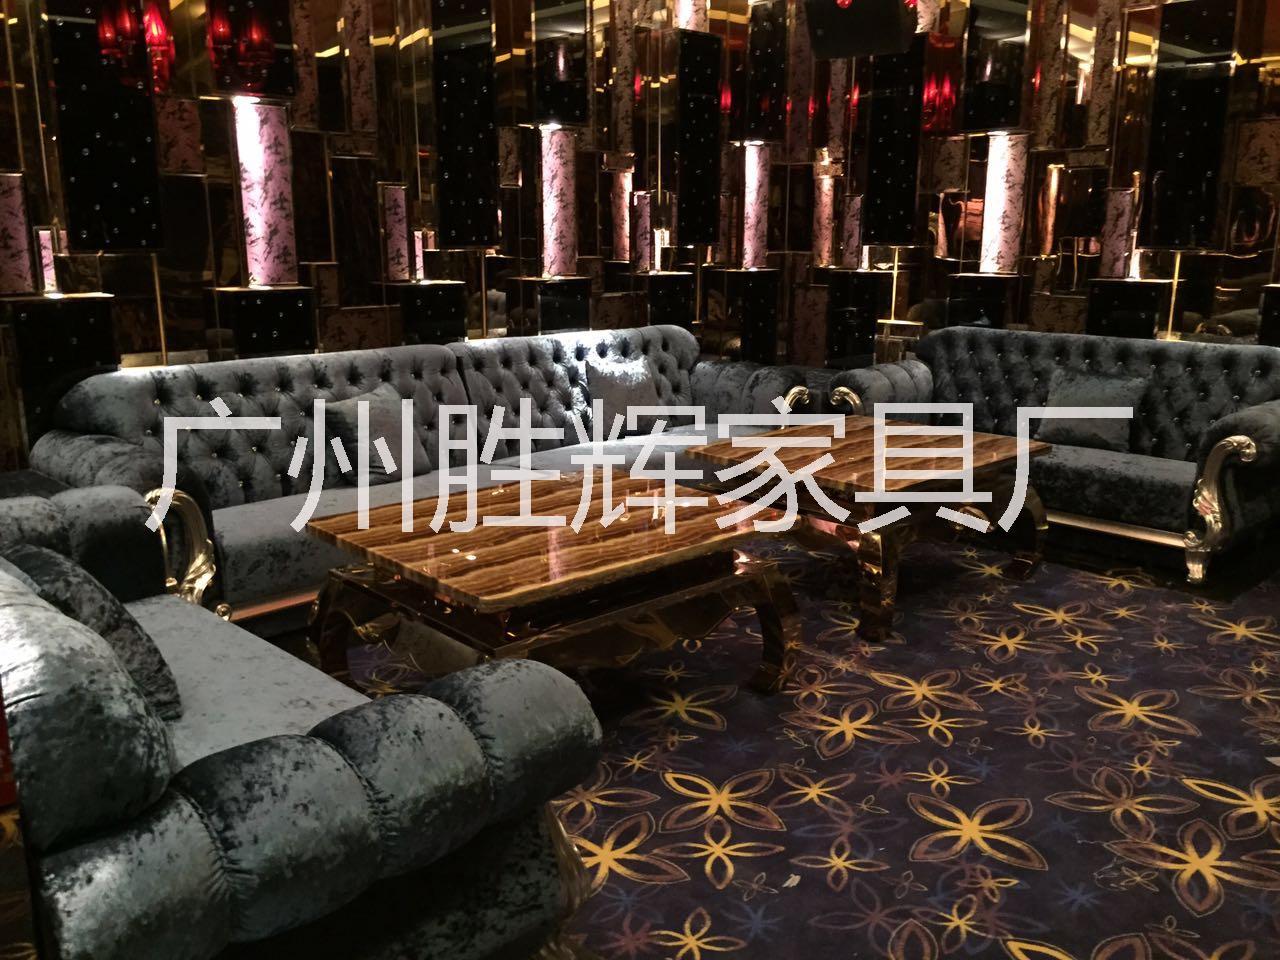 广州高档沙发厂家直销供应用于娱乐沙发的广州高档沙发厂家直销